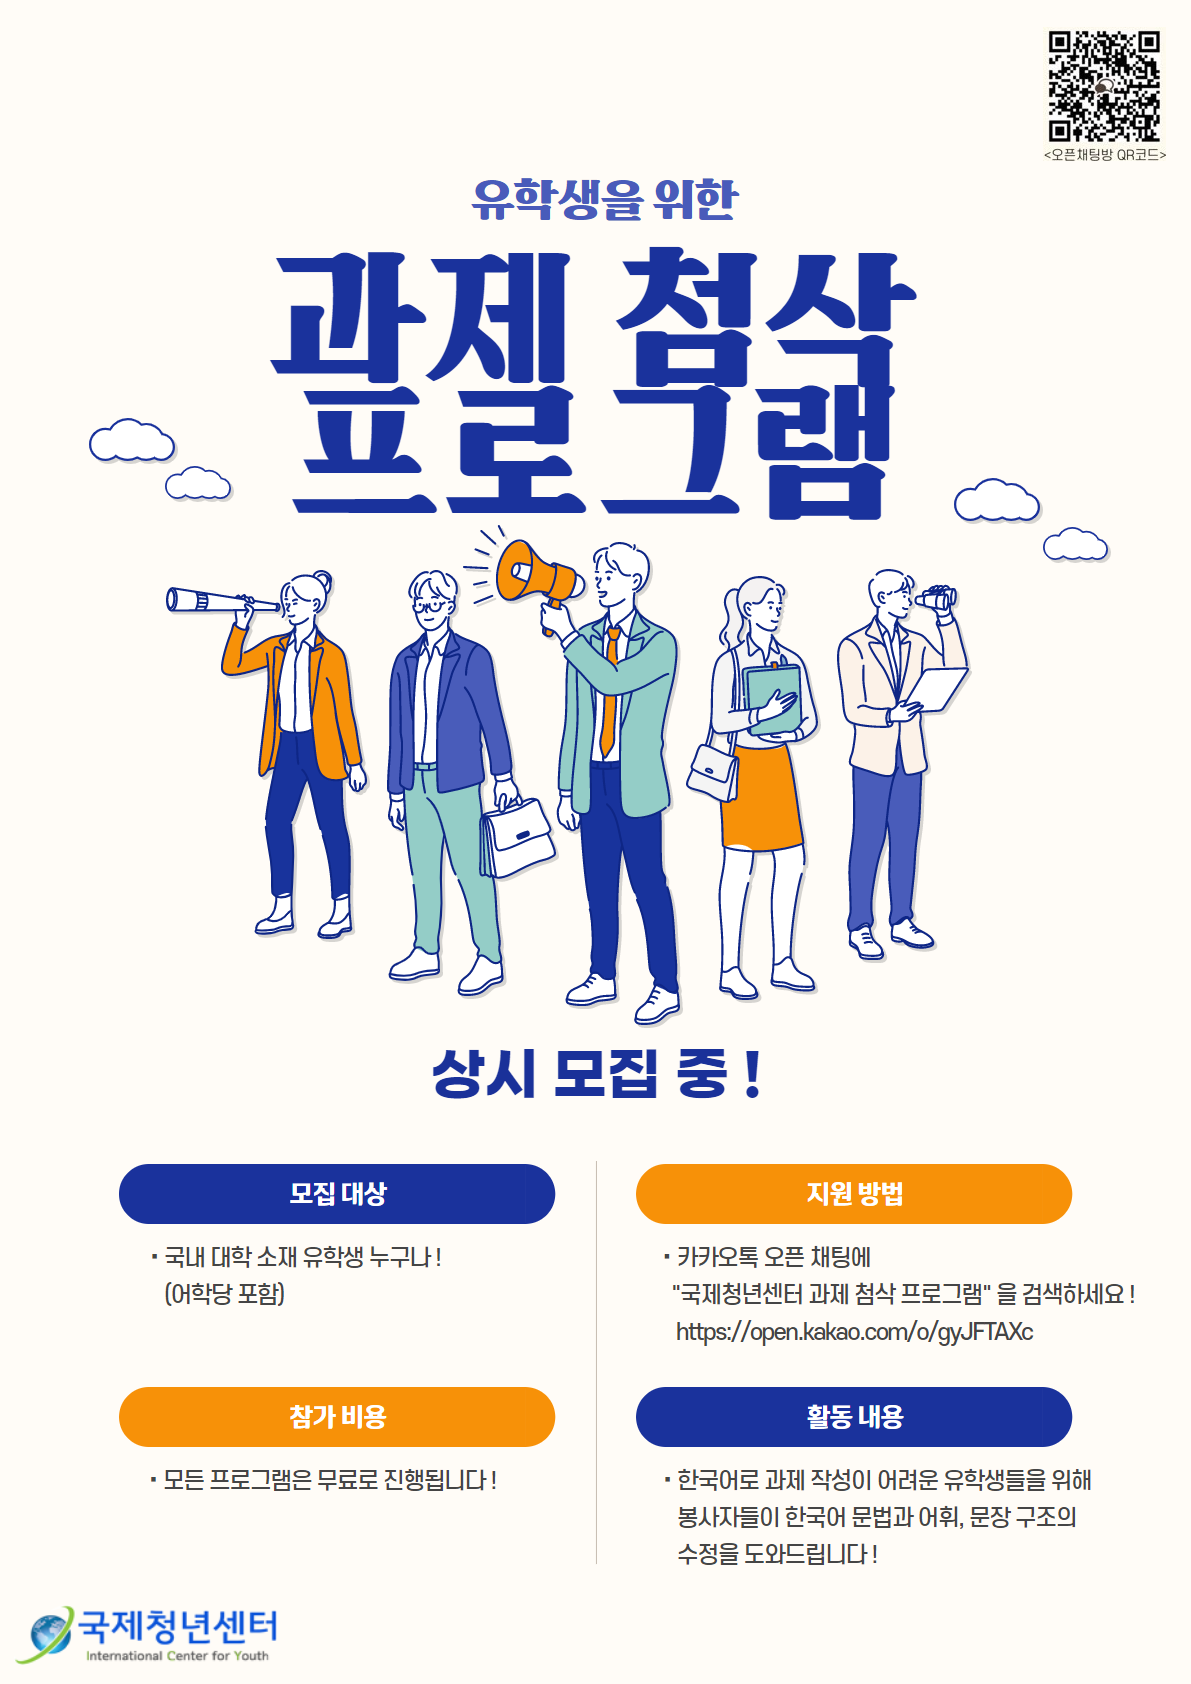 유학생 한국어 과제 첨삭 프로그램 포스터 (한국어).png